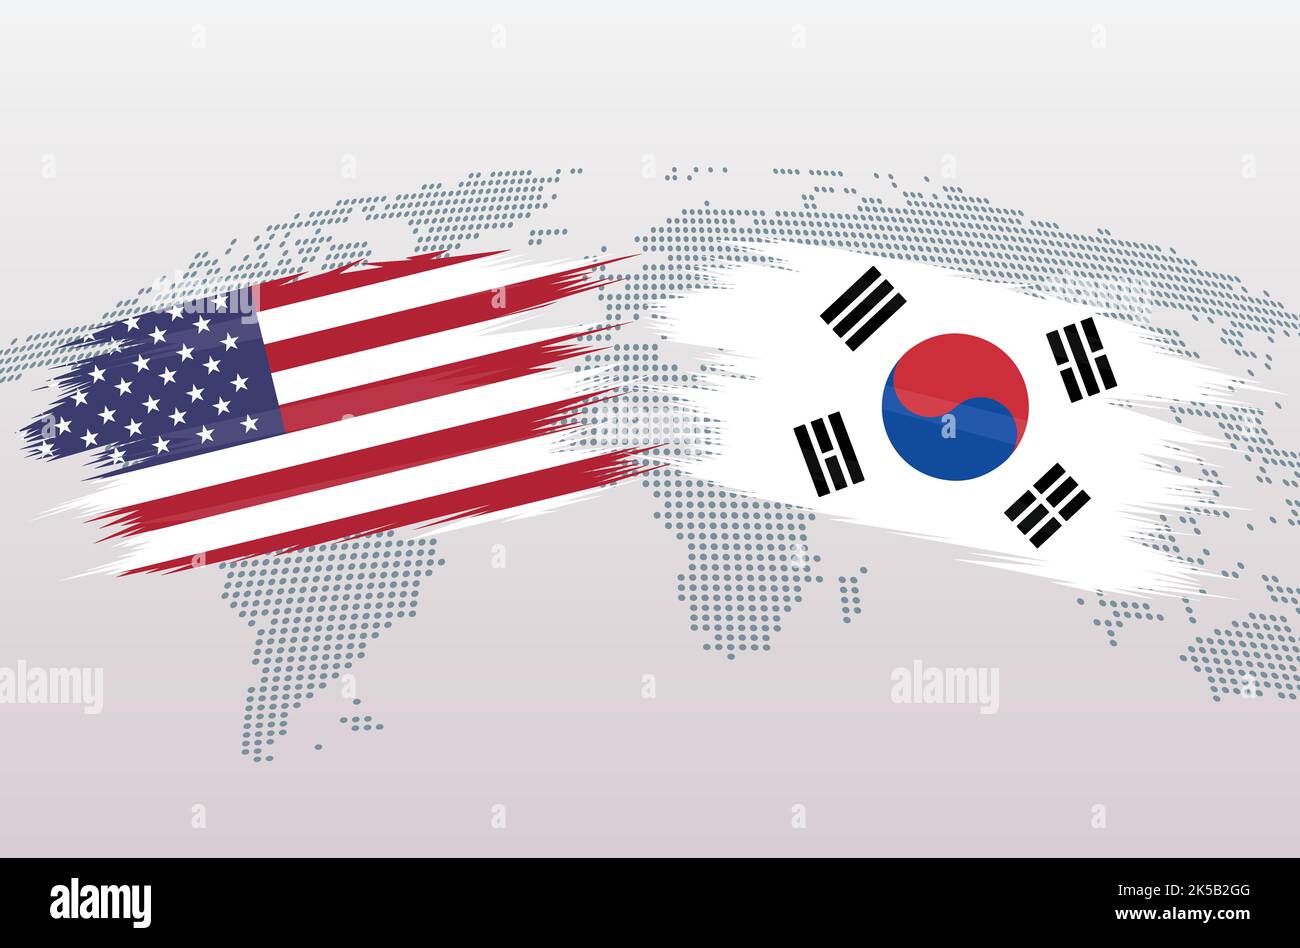 Bandiere USA vs Corea. Bandiere degli Stati Uniti d'America vs Corea, isolate su sfondo grigio della mappa mondiale. Illustrazione vettoriale. Illustrazione Vettoriale